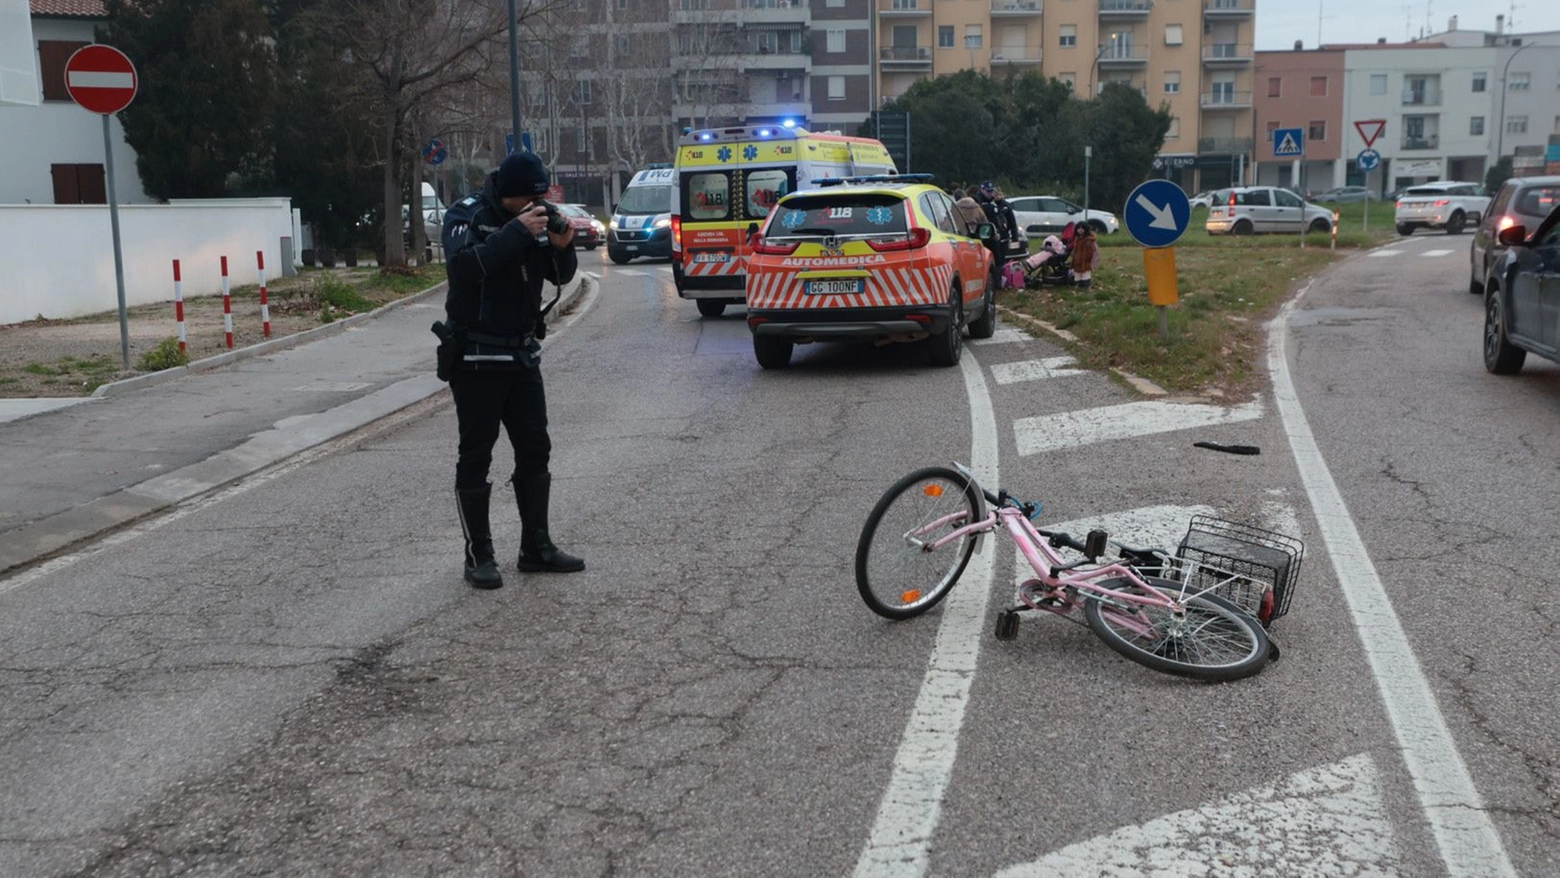 L'incidente è avvenuto a Ravenna, in viale Po alle 7.45 (foto Zani)